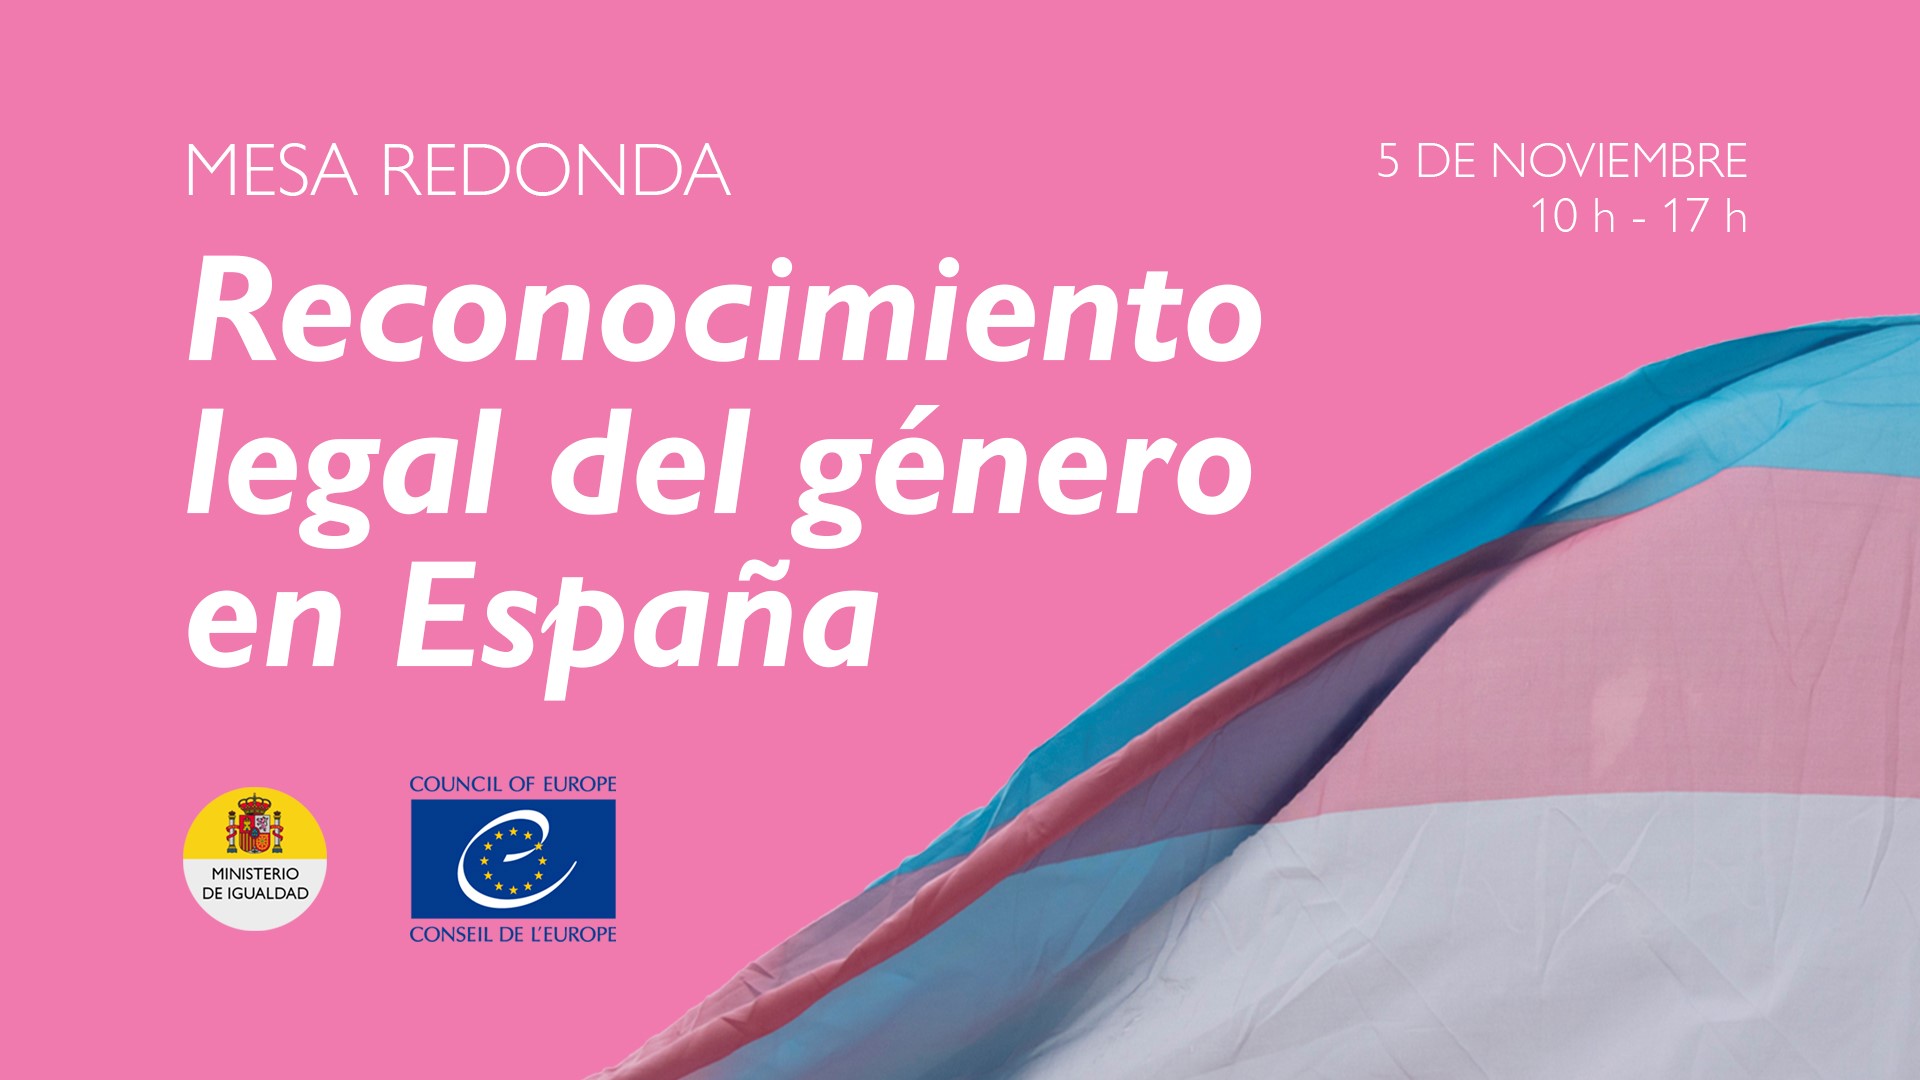 Roundtable on Legal gender recognition in Spain - 5 November 2021